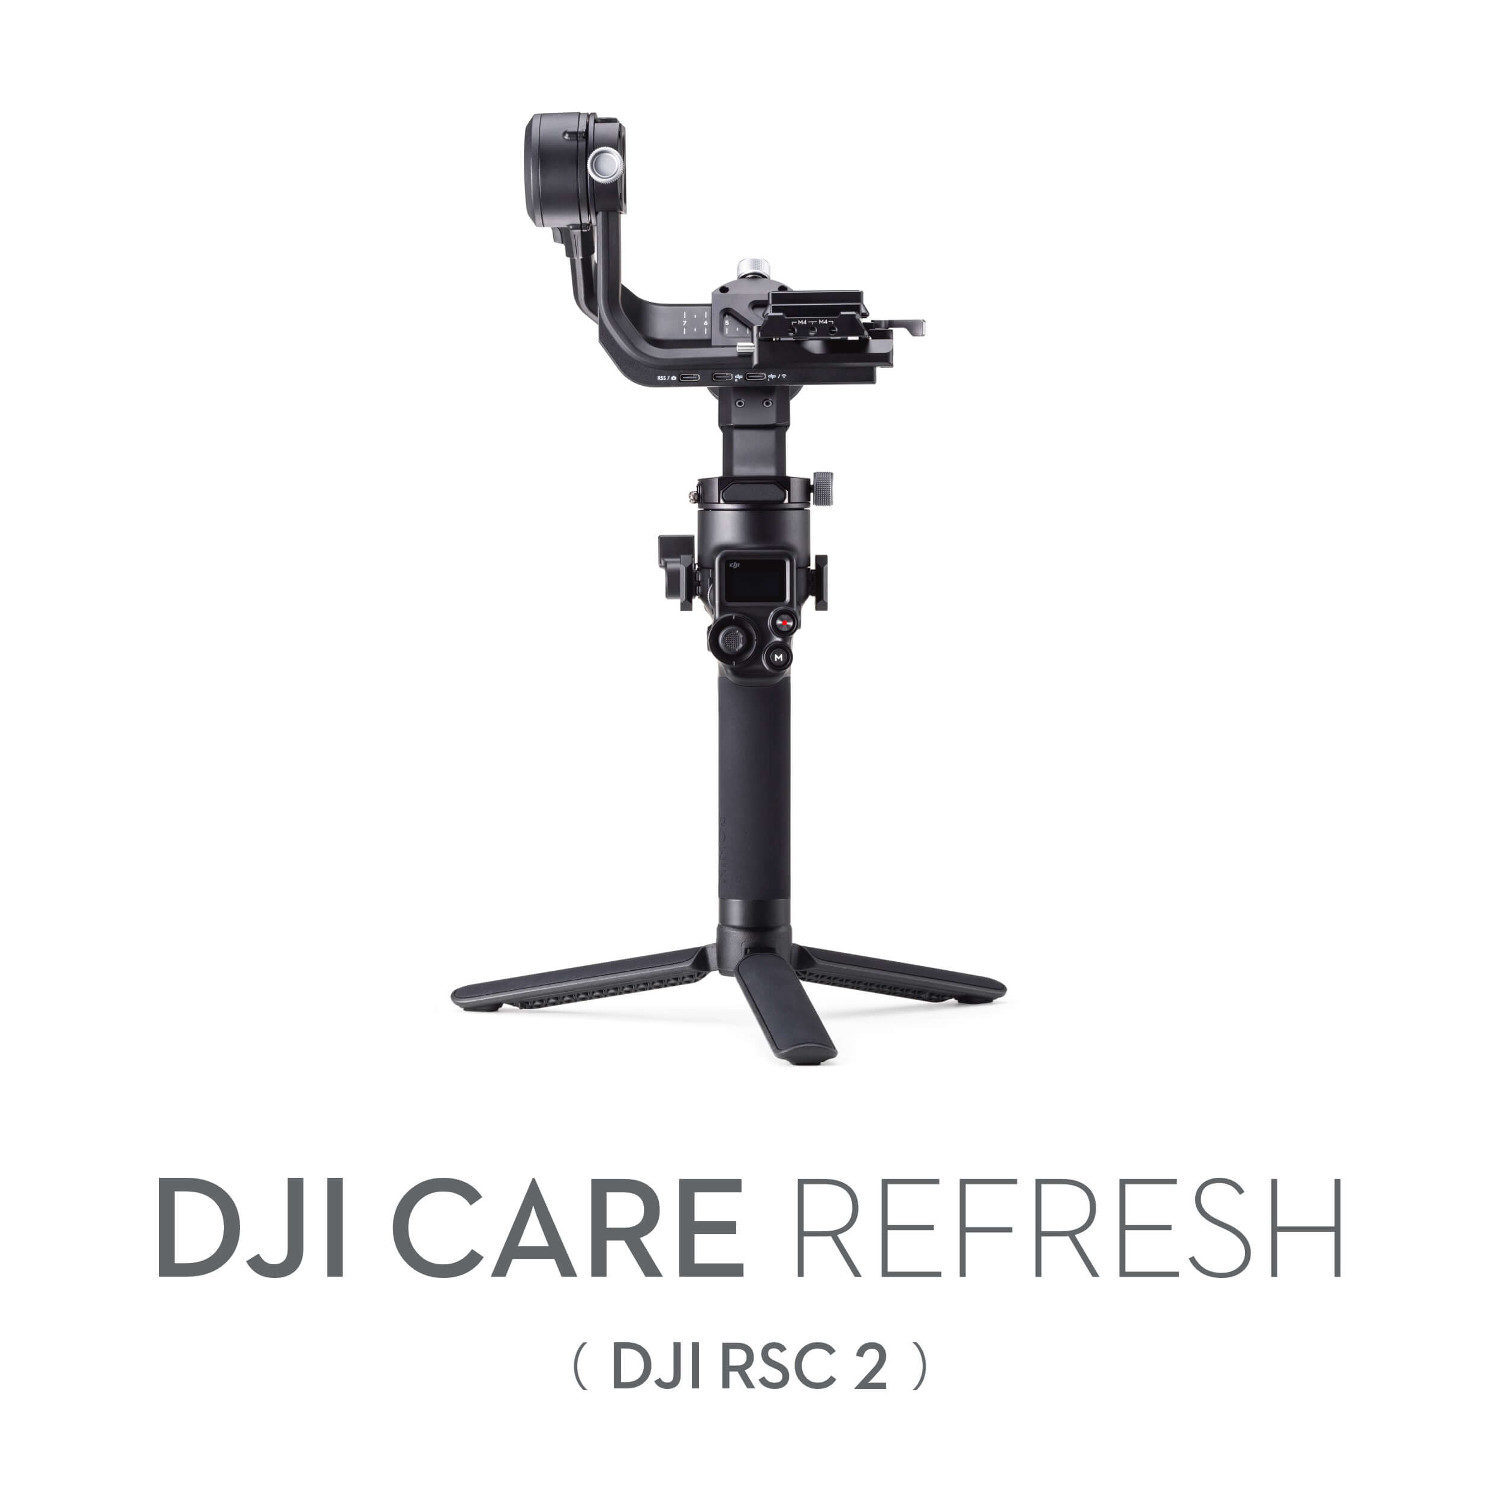 DJI Care Refresh 1-Year Plan RSC 2)